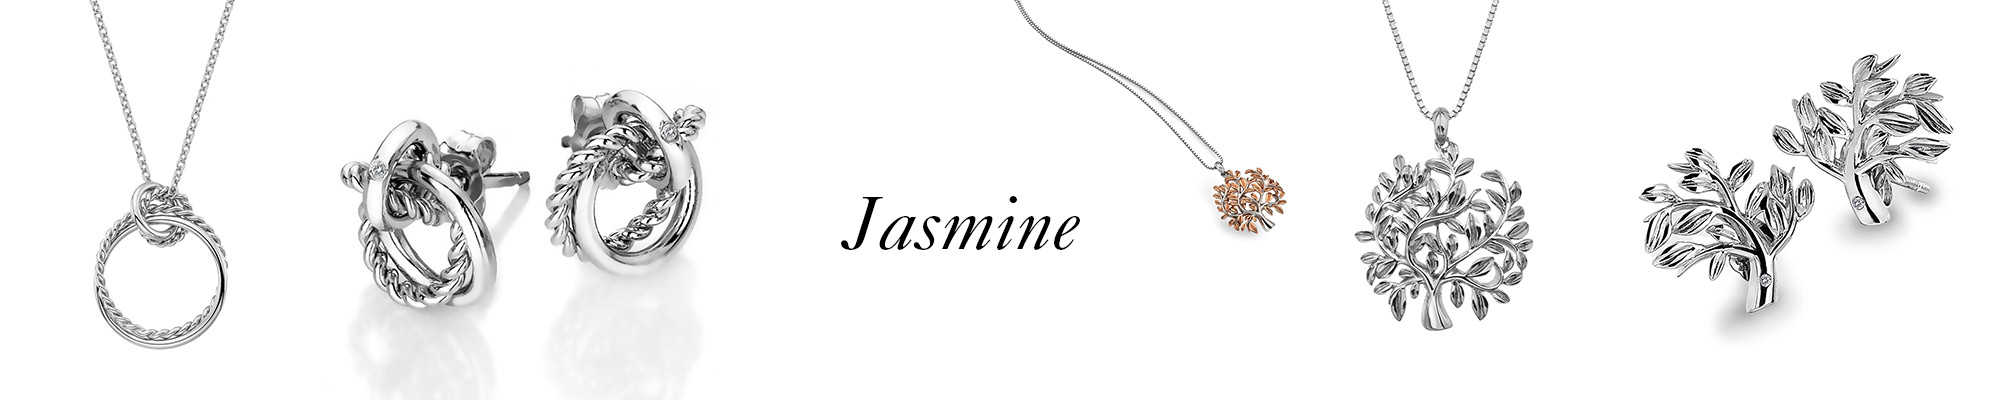 kolekce Jasmine